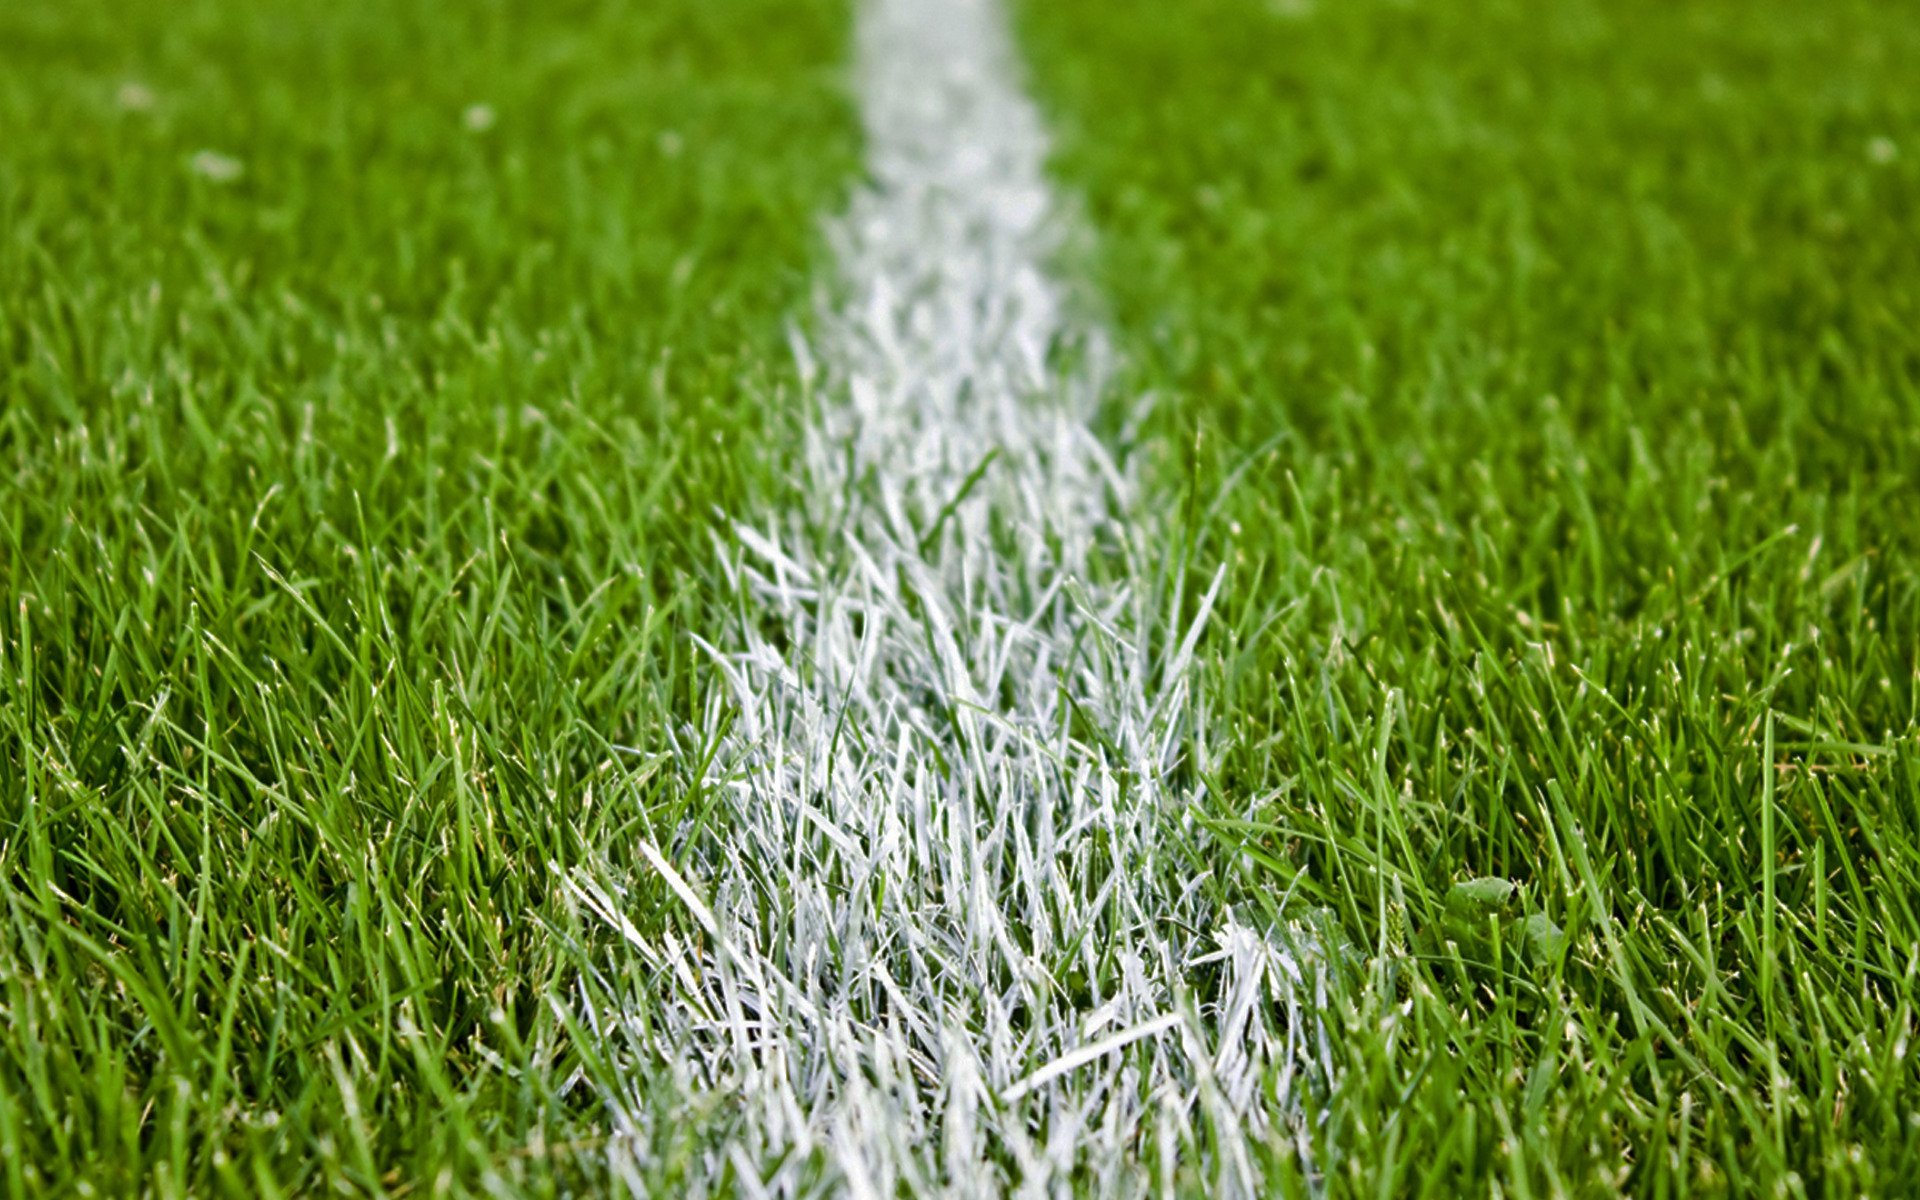 Football, grass, pitch